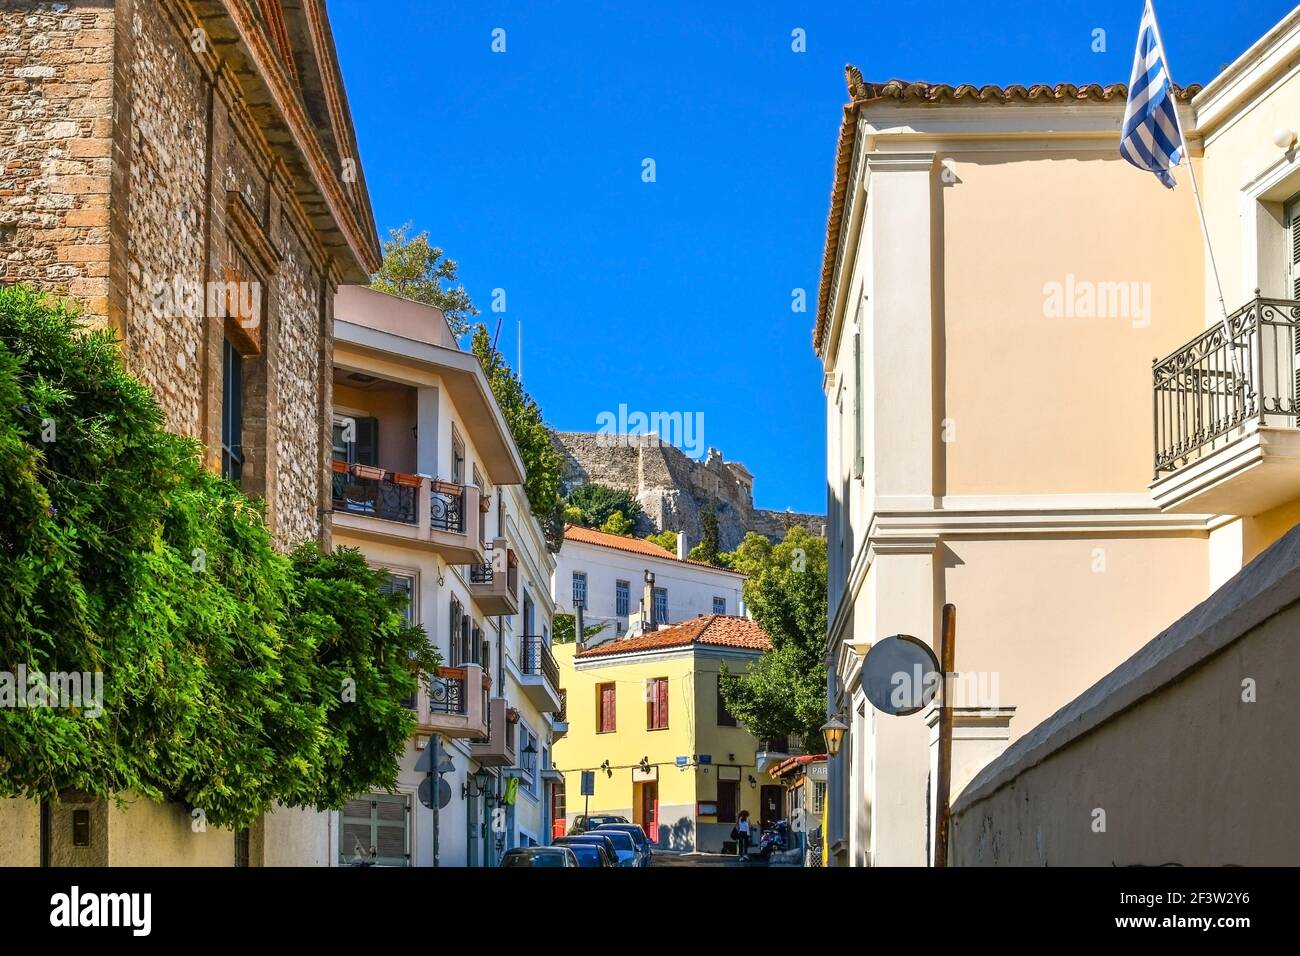 Vue sur une partie de la colline de l'Acropole depuis les rues résidentielles colorées du quartier de Plaka à Athènes, Grèce. Banque D'Images